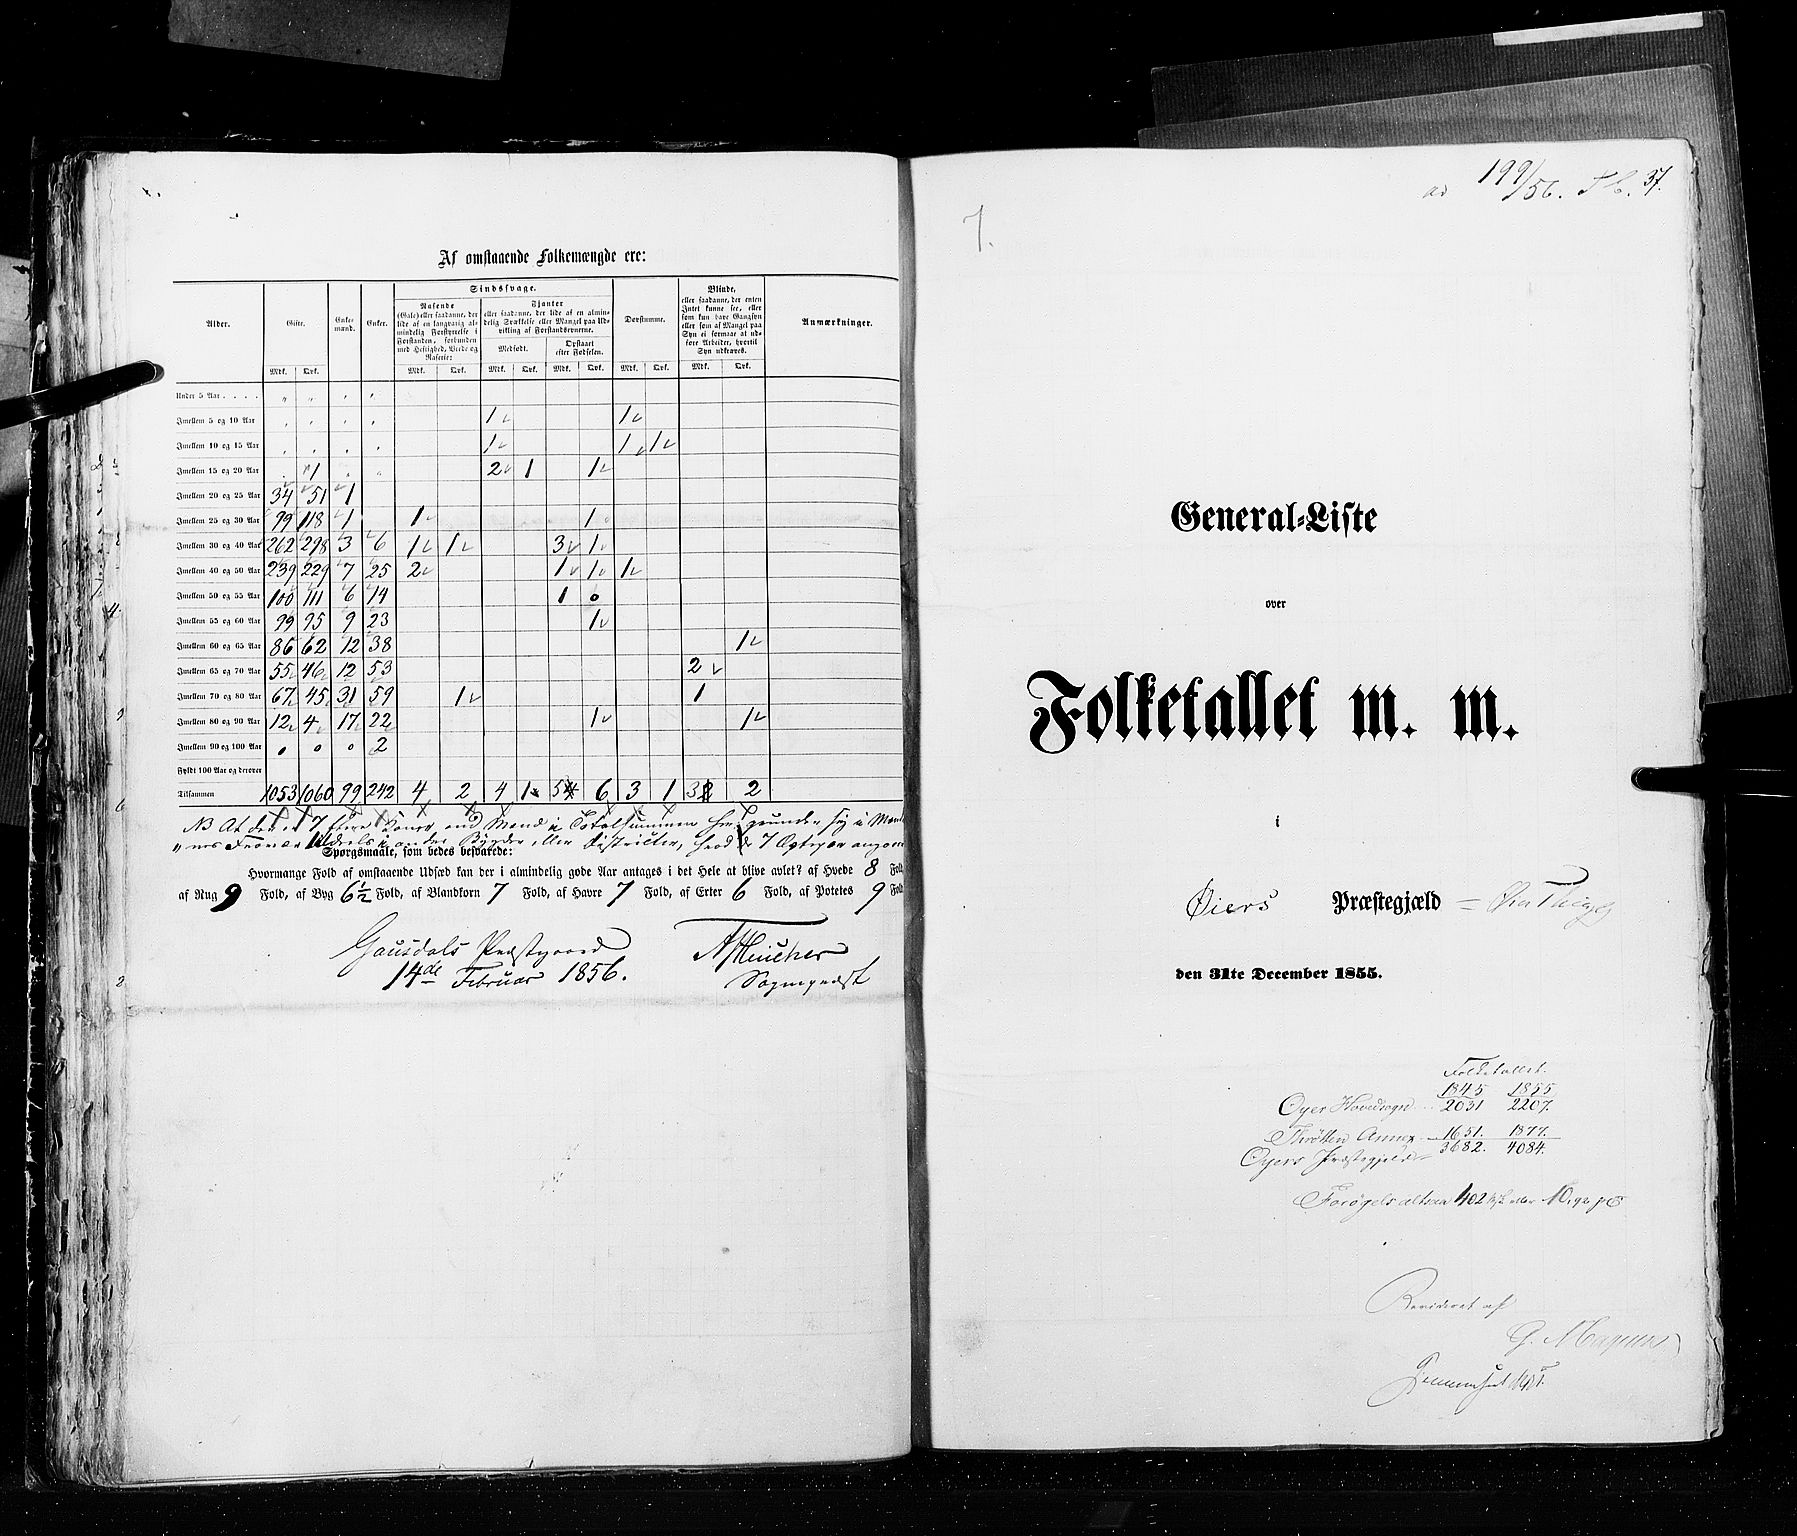 RA, Folketellingen 1855, bind 2: Kristians amt, Buskerud amt og Jarlsberg og Larvik amt, 1855, s. 37